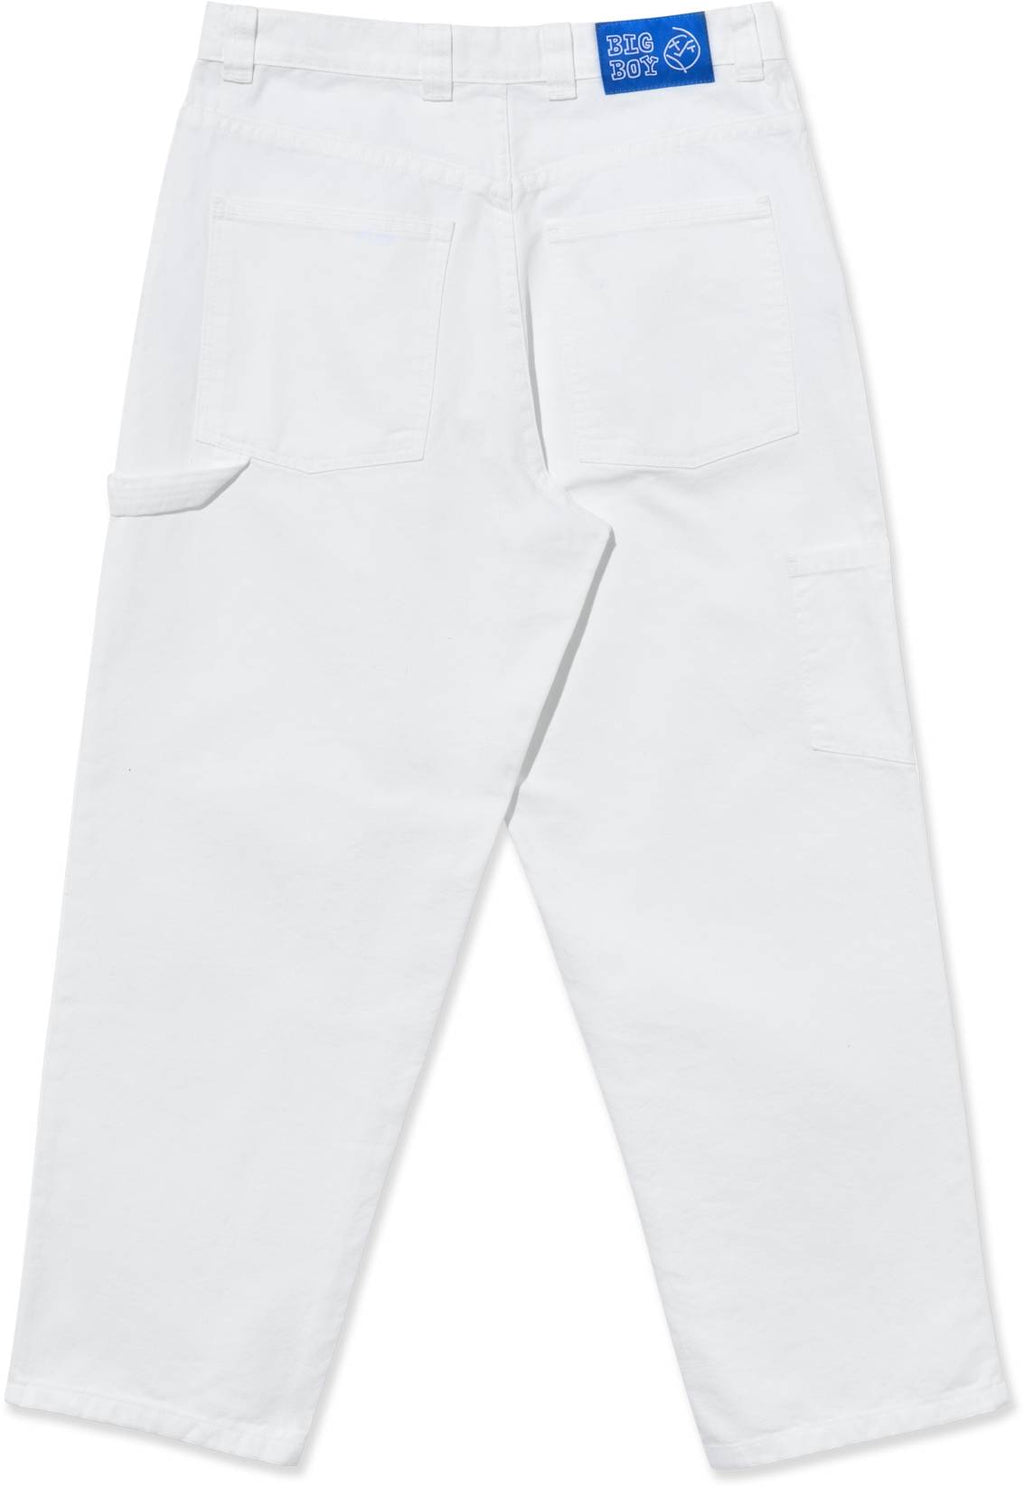  Polar Skate Co. Jeans Big Boy Work Pants White Bianco Uomo - 2